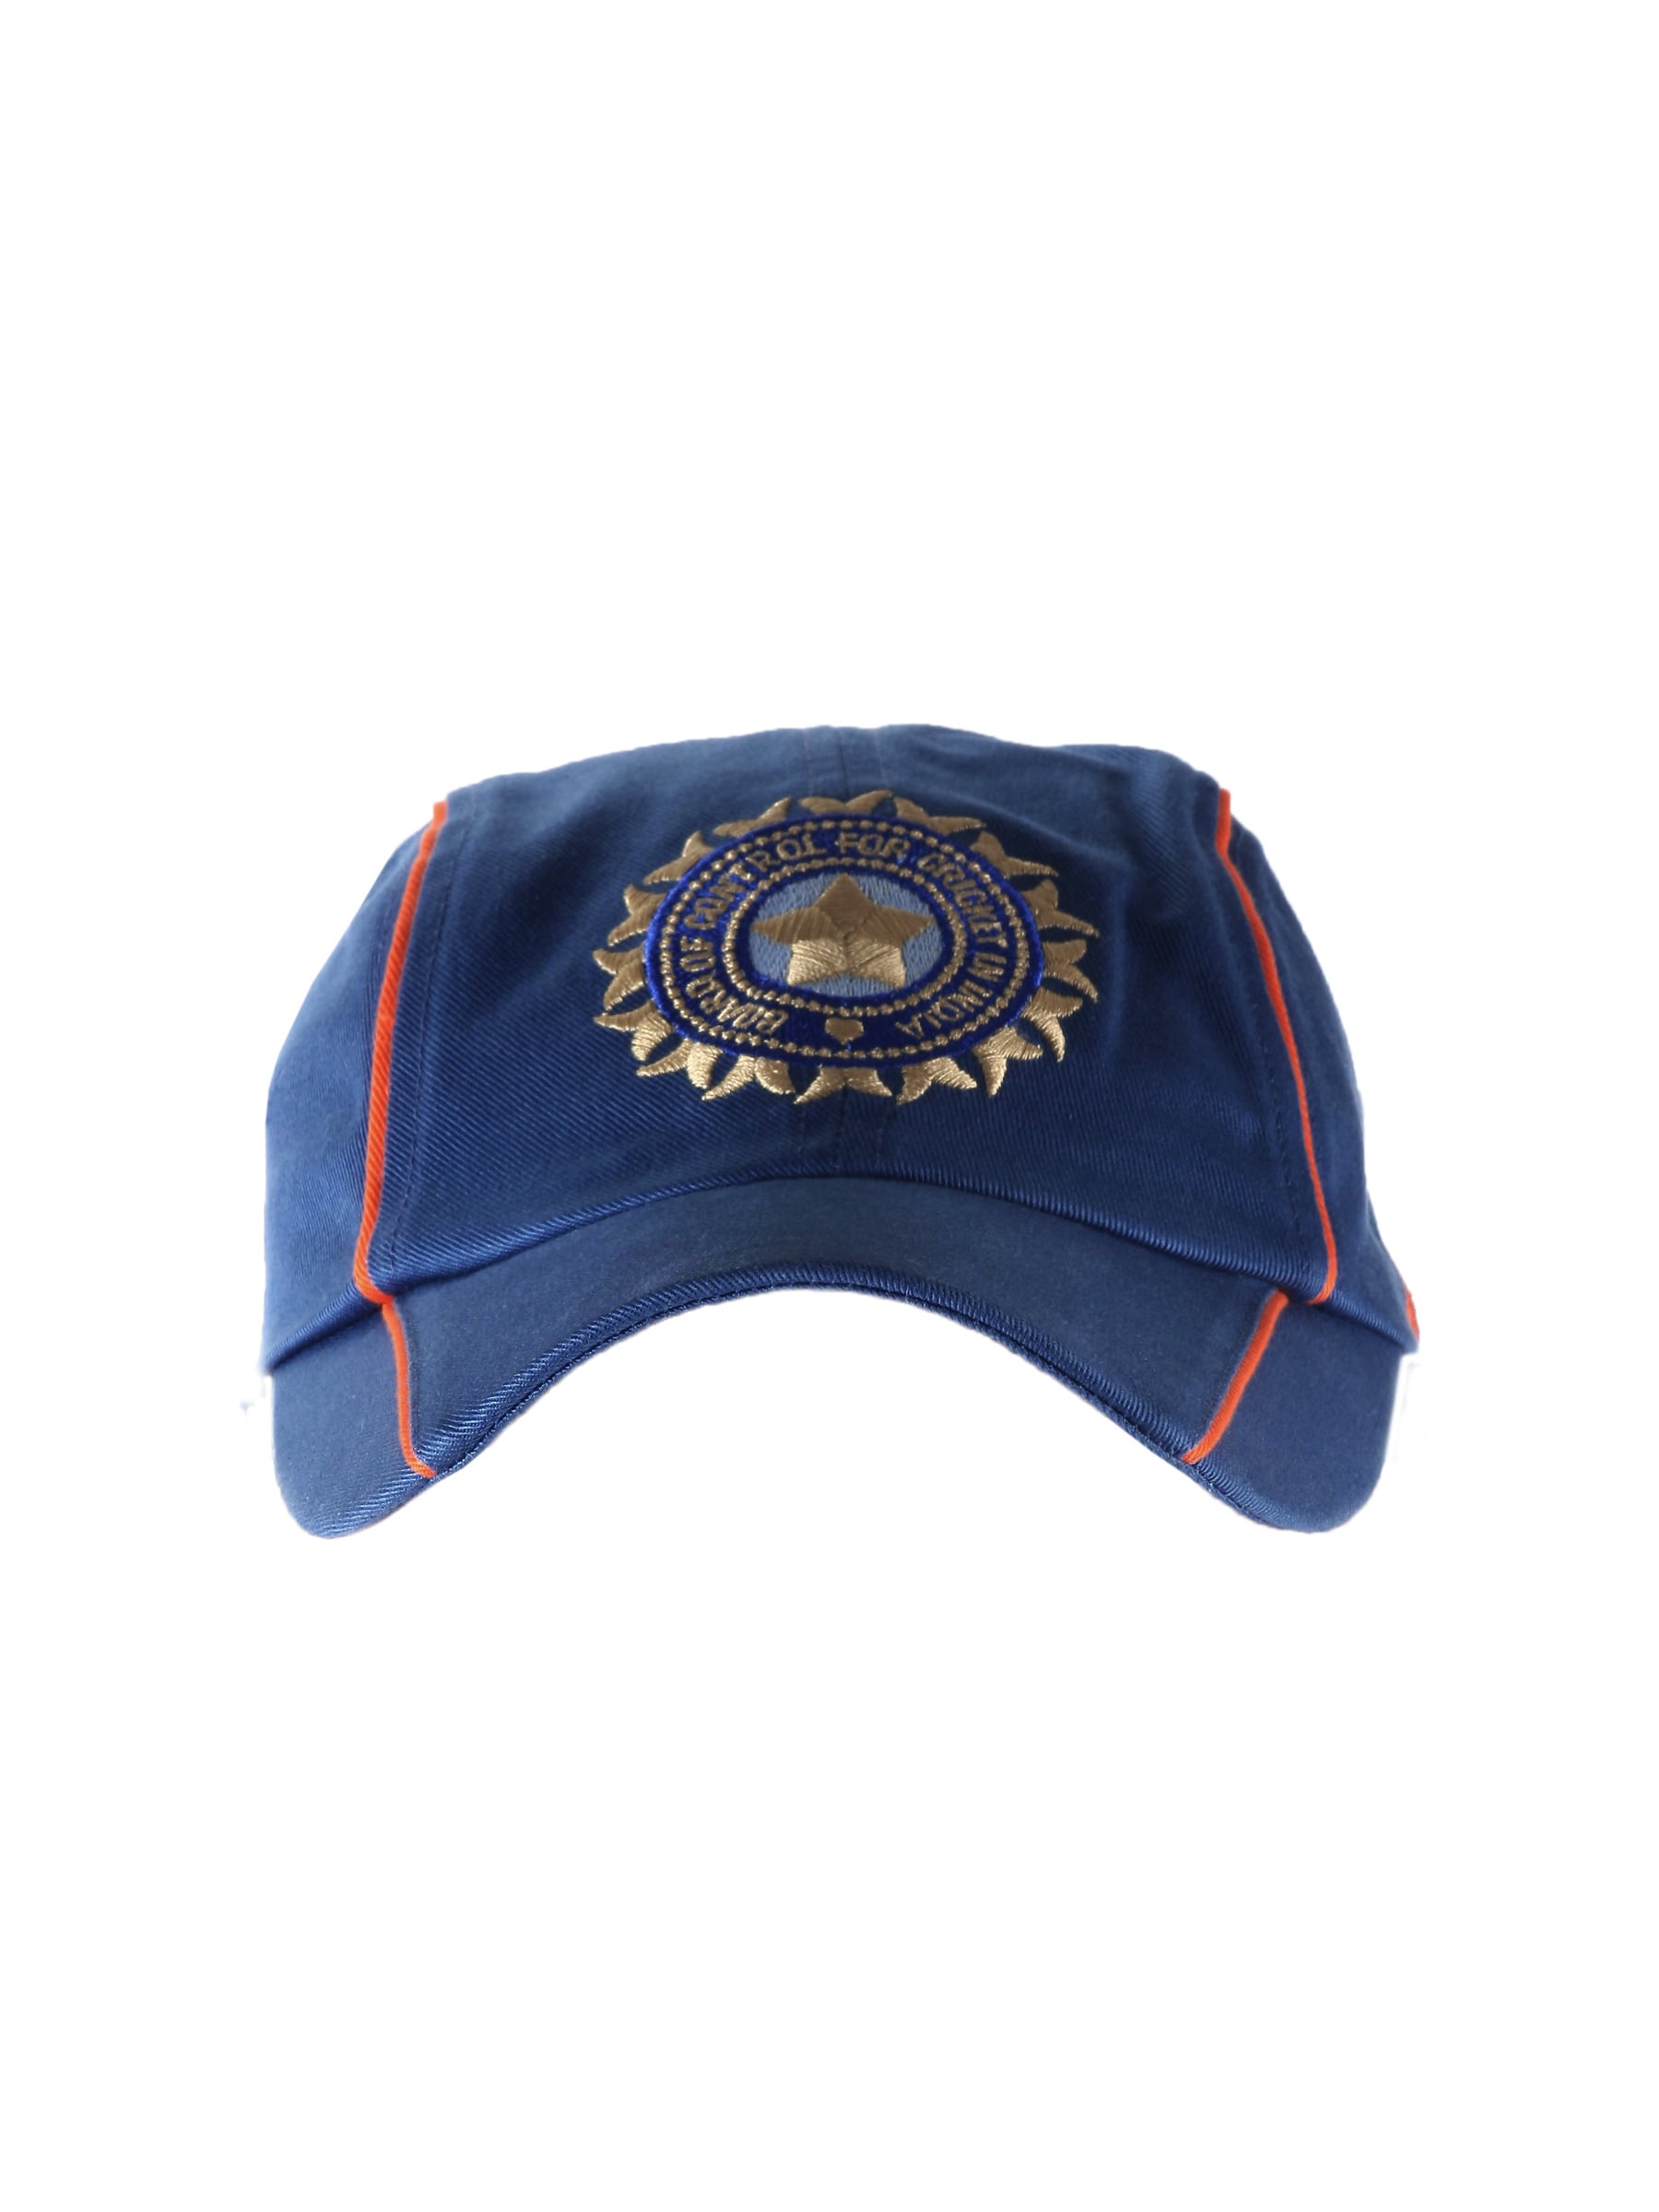 Nike Unisex India Stadium Blue Cap